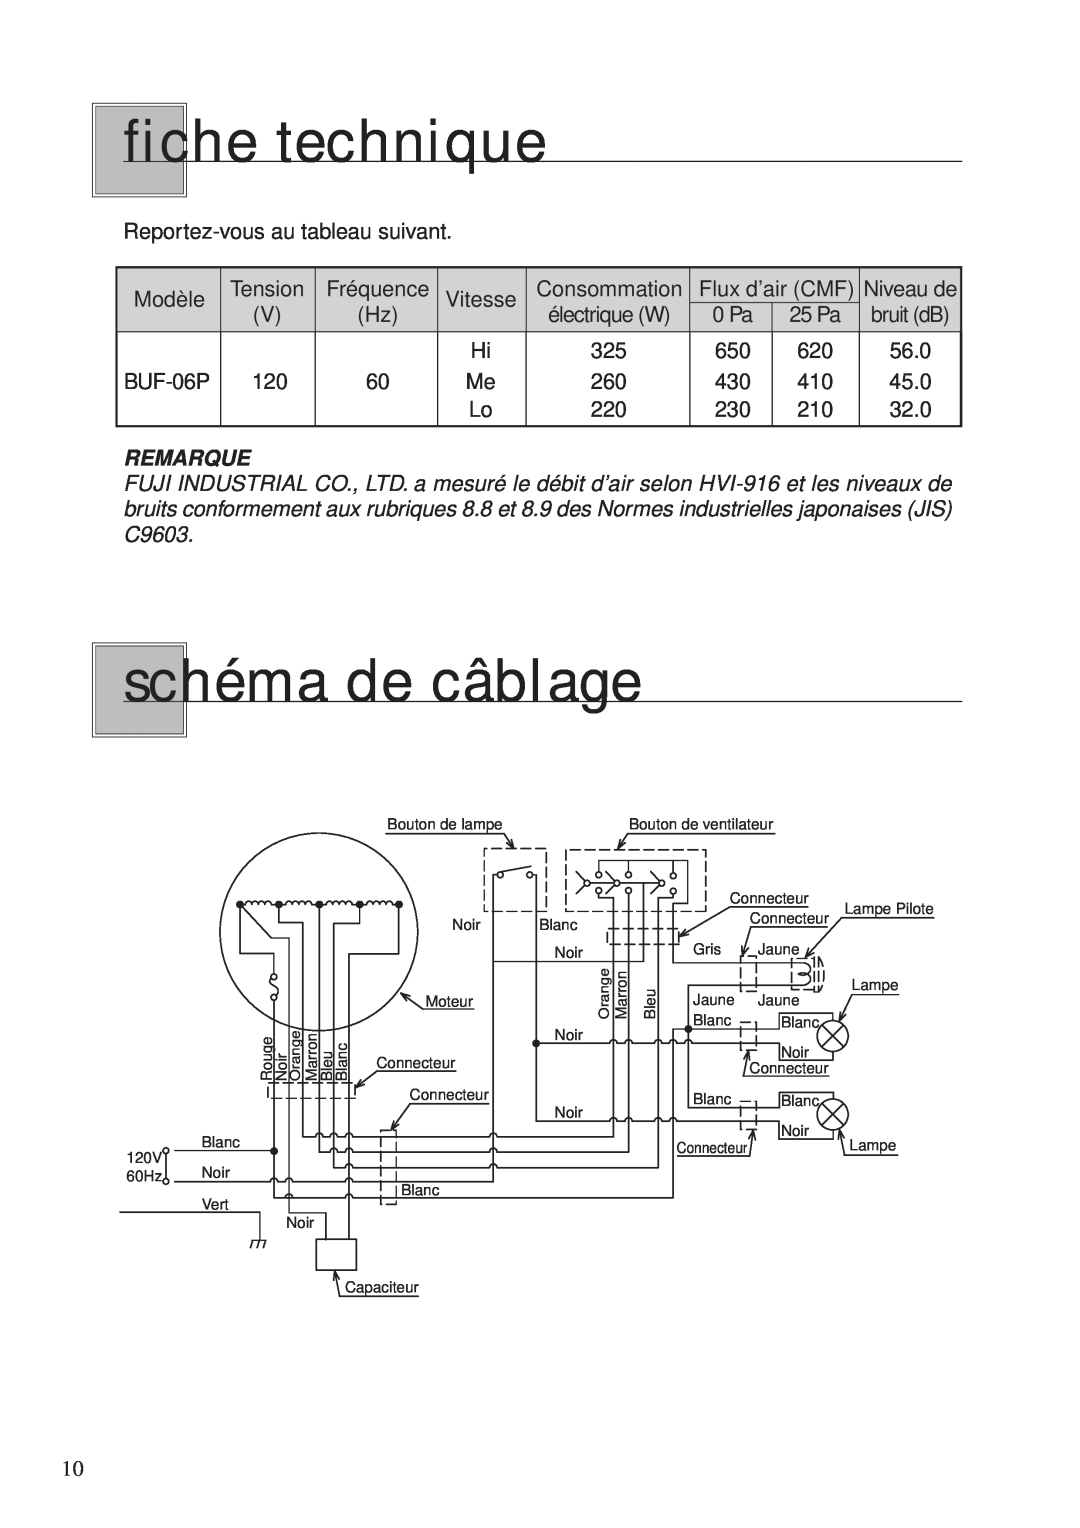 Fujioh BUF-06P operation manual fiche technique, schéma de câblage, Remarque, électrique W 